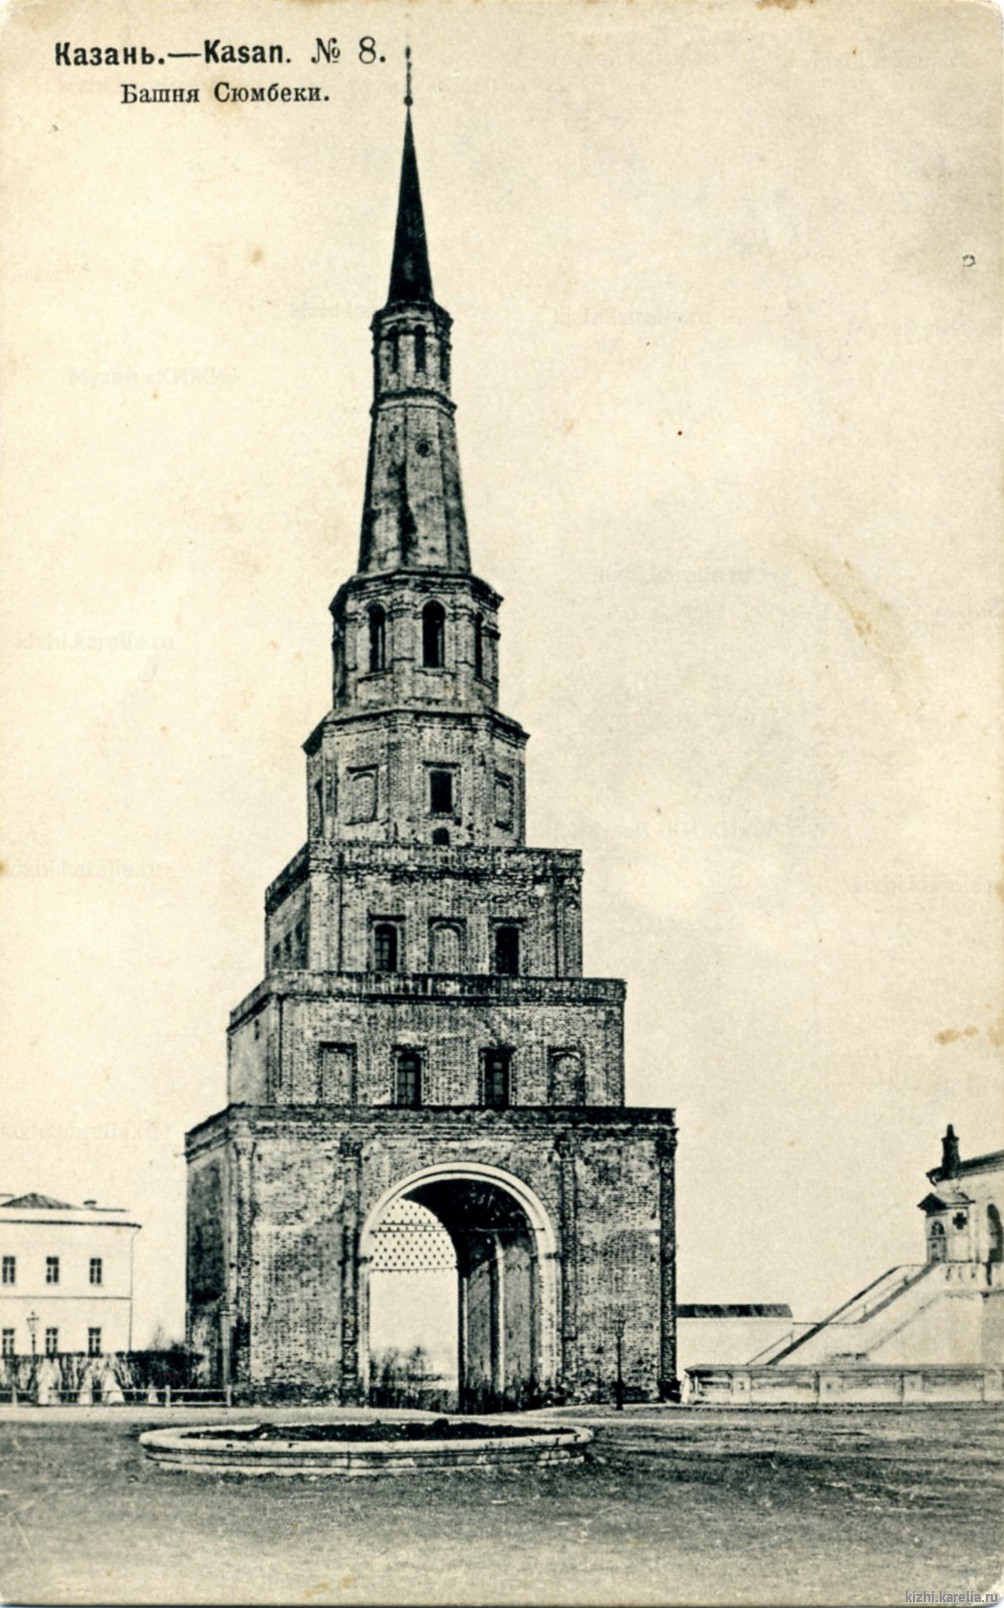 Казань. Башня Сюмбеки